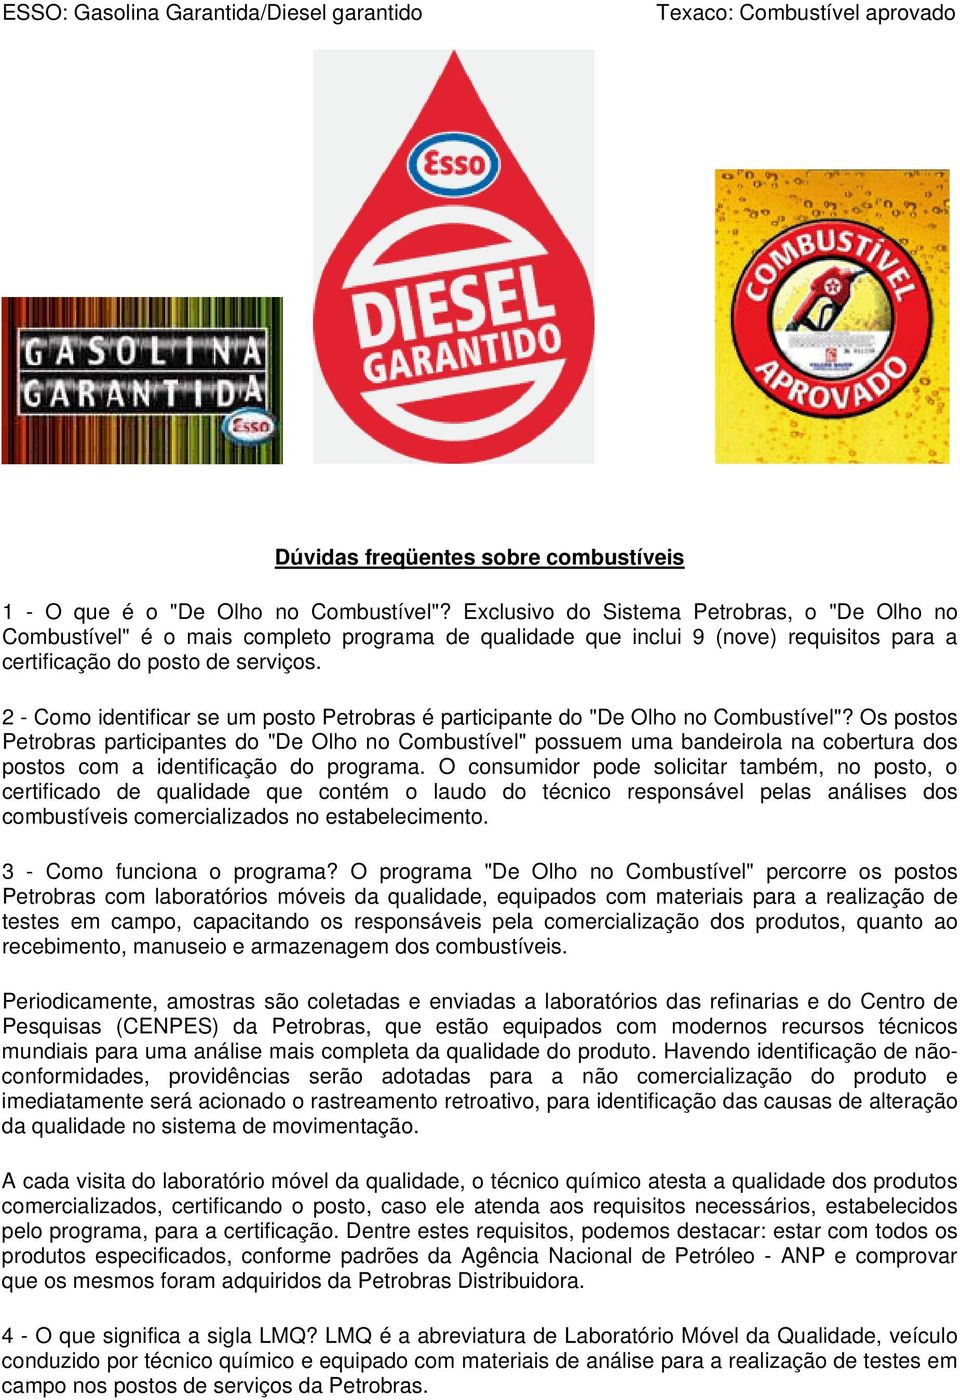 2 - Como identificar se um posto Petrobras é participante do "De Olho no Combustível"?